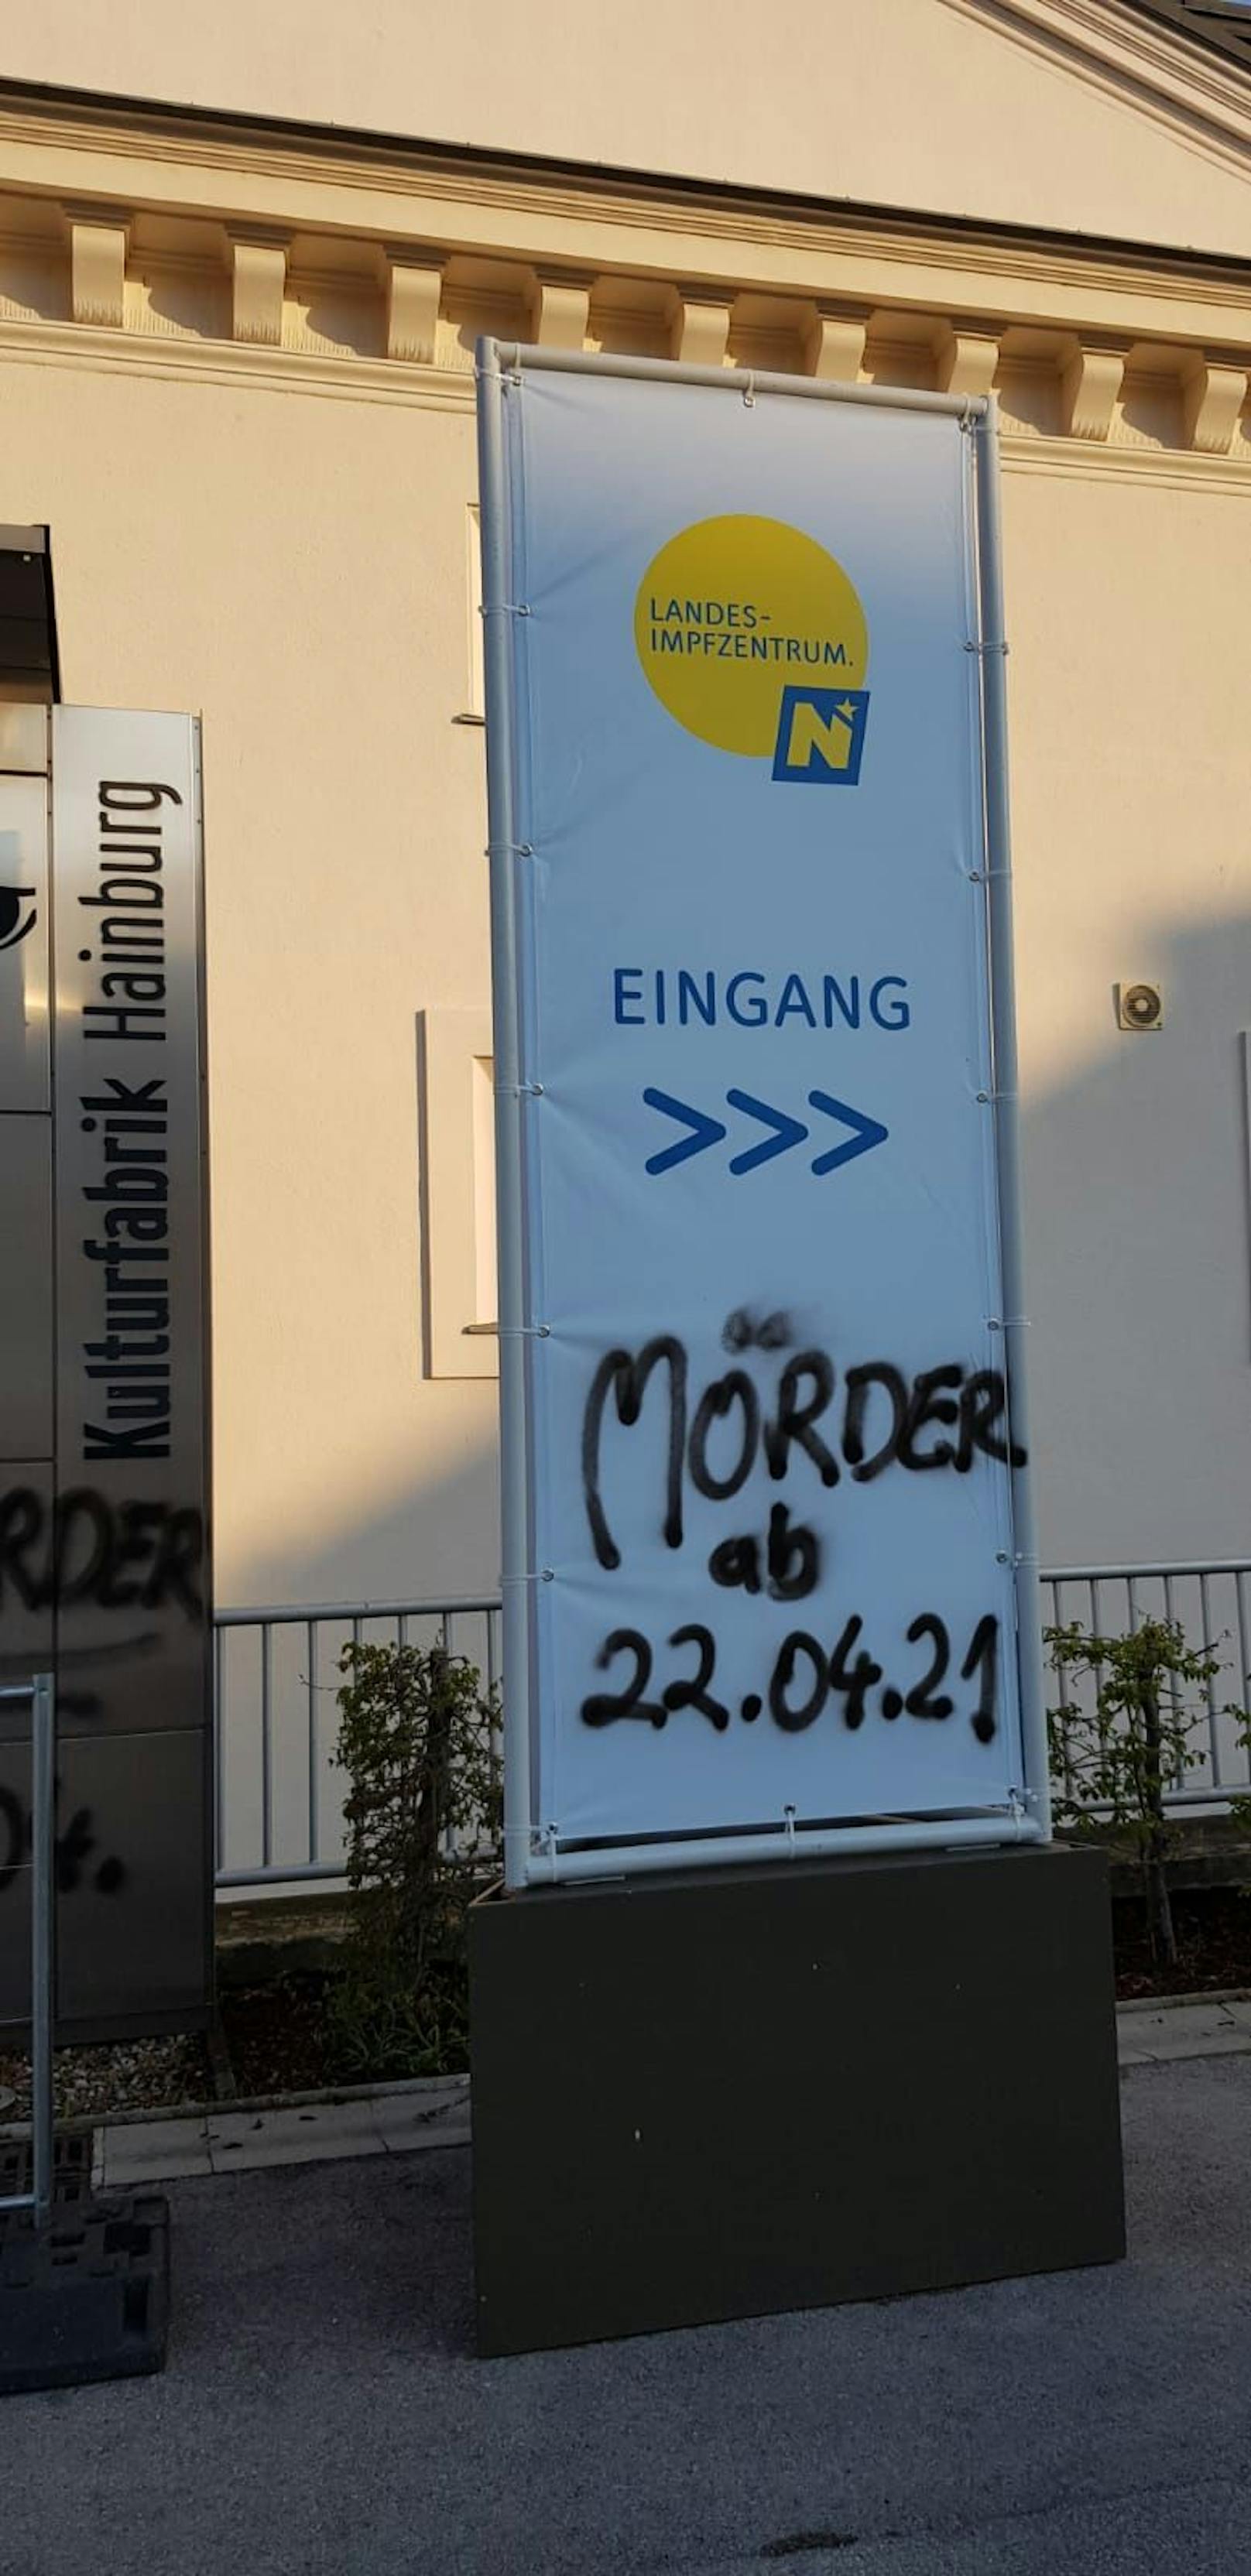 Unbekannte beschmierten die Impfstraße mit dem Schriftzug "Mörder".